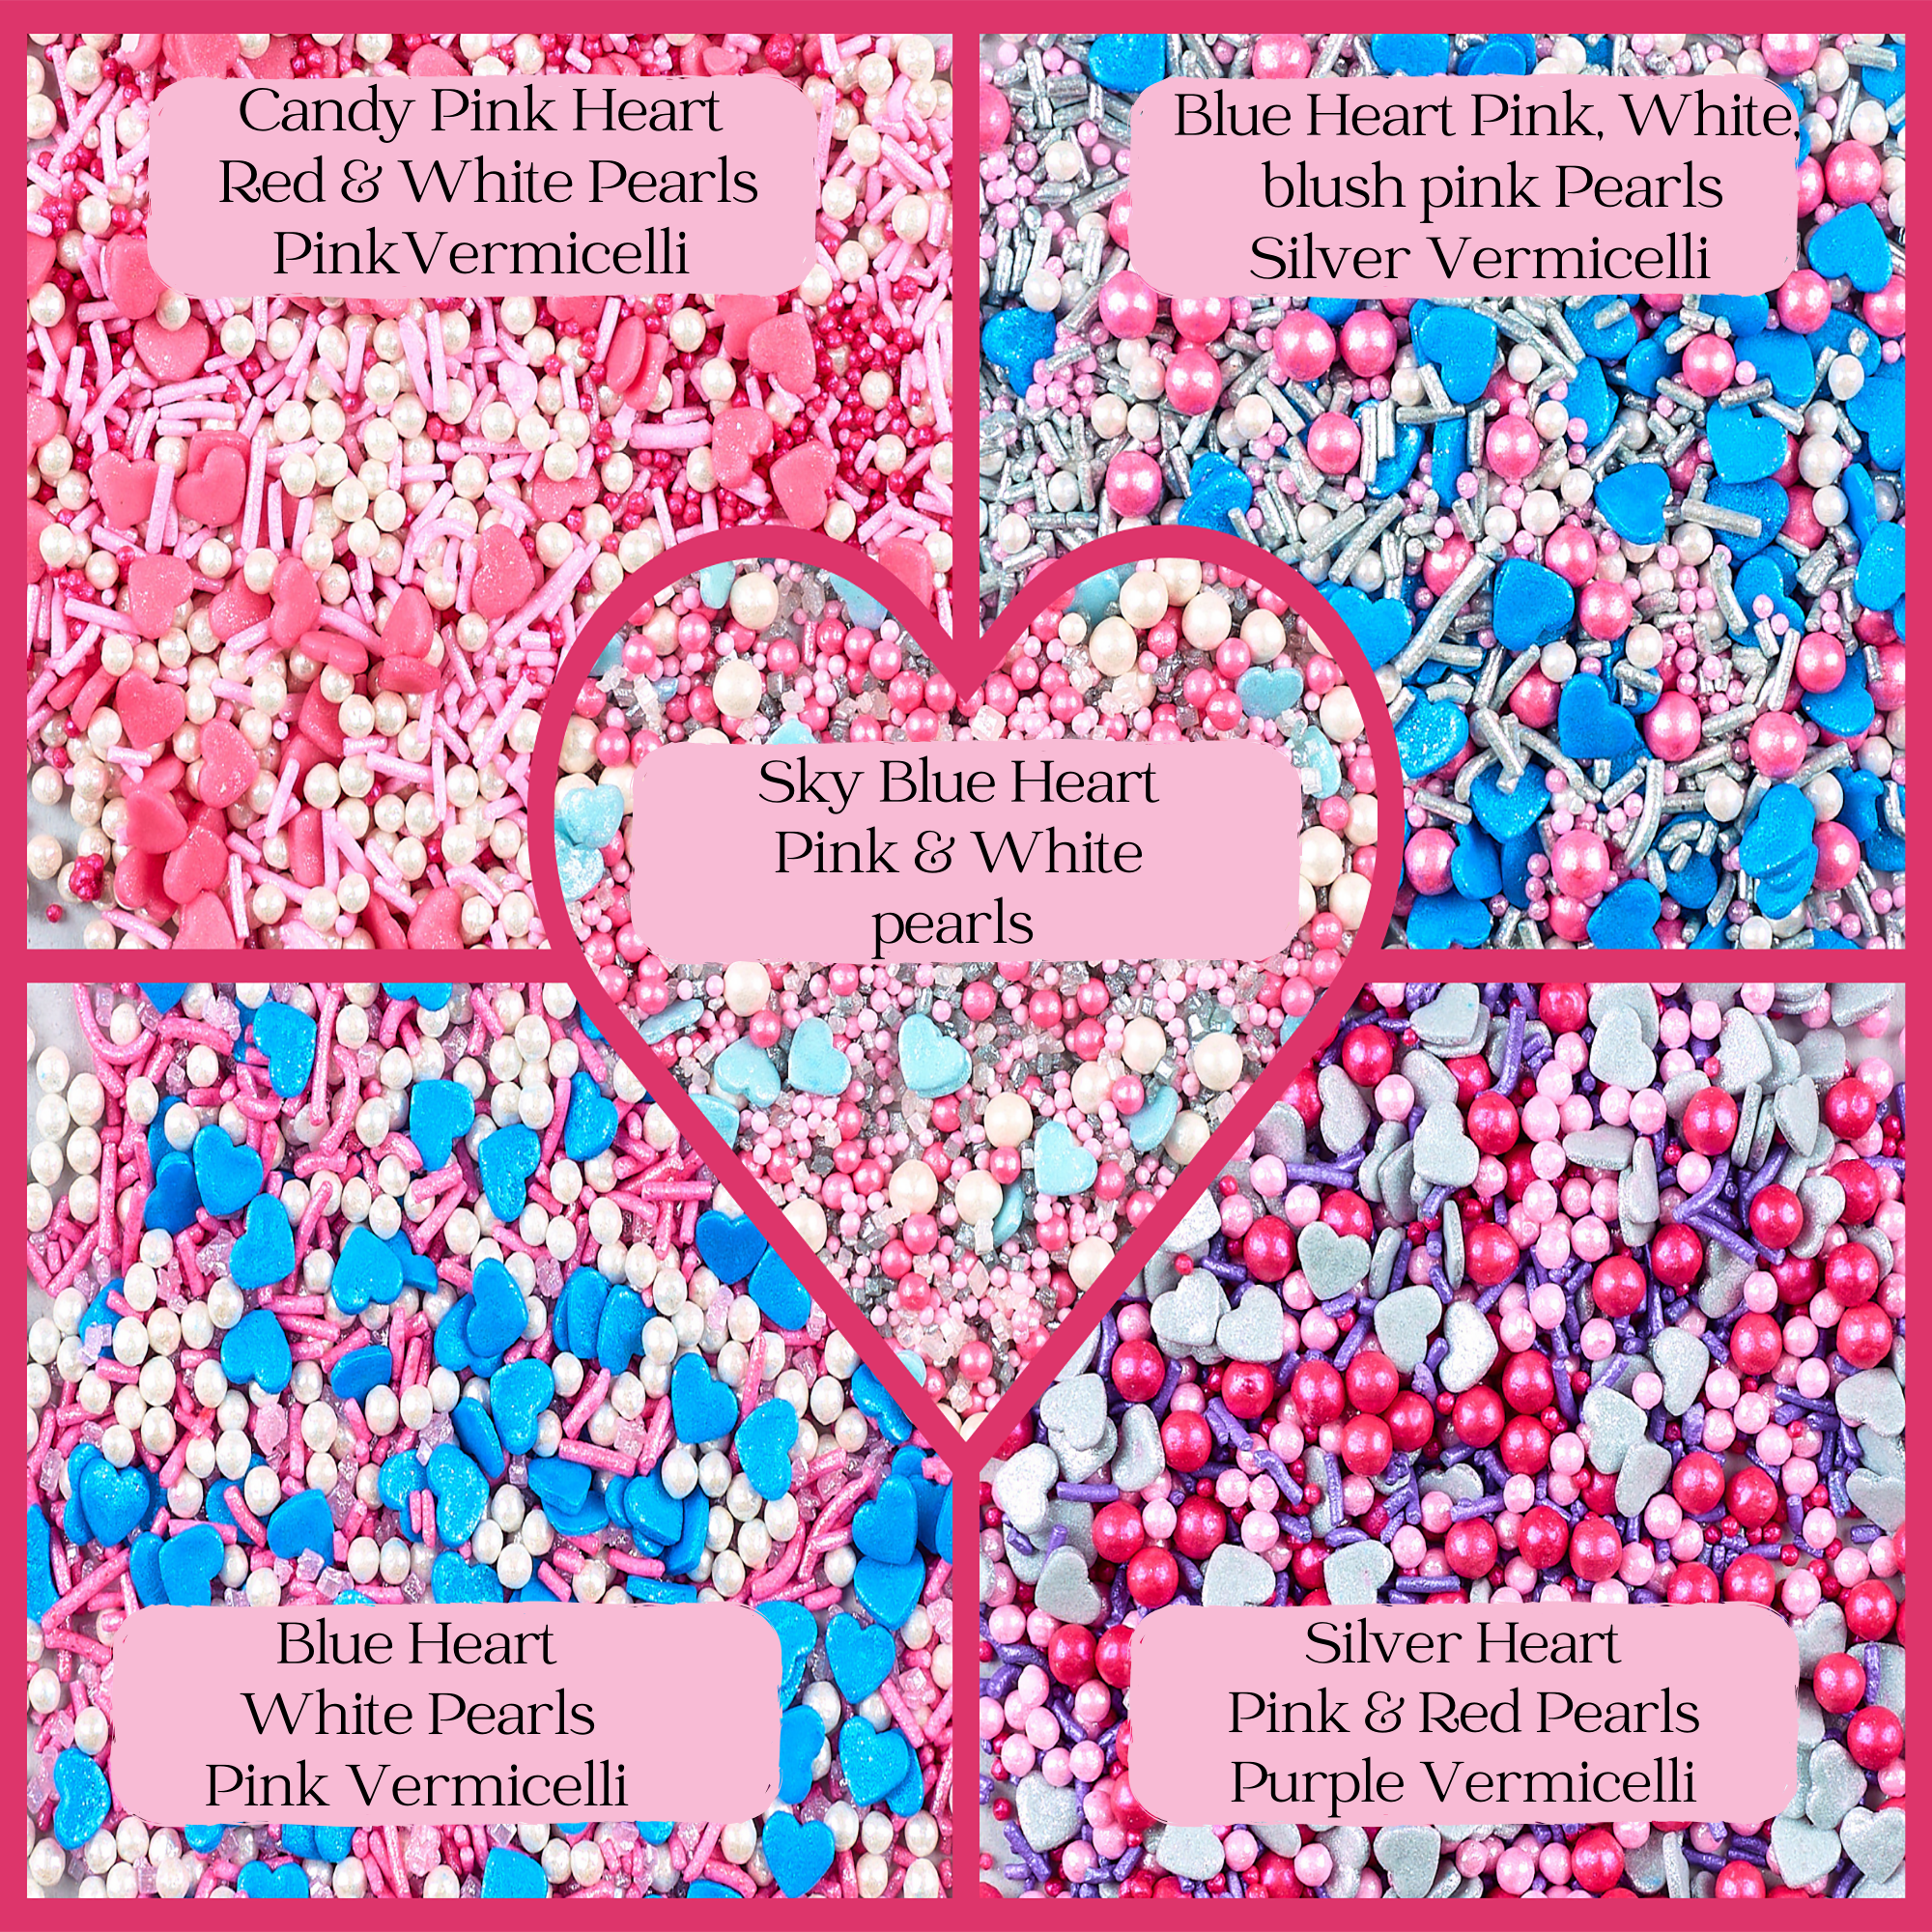 Valentine Sprinkles VS Multipack 16 - 100 gms